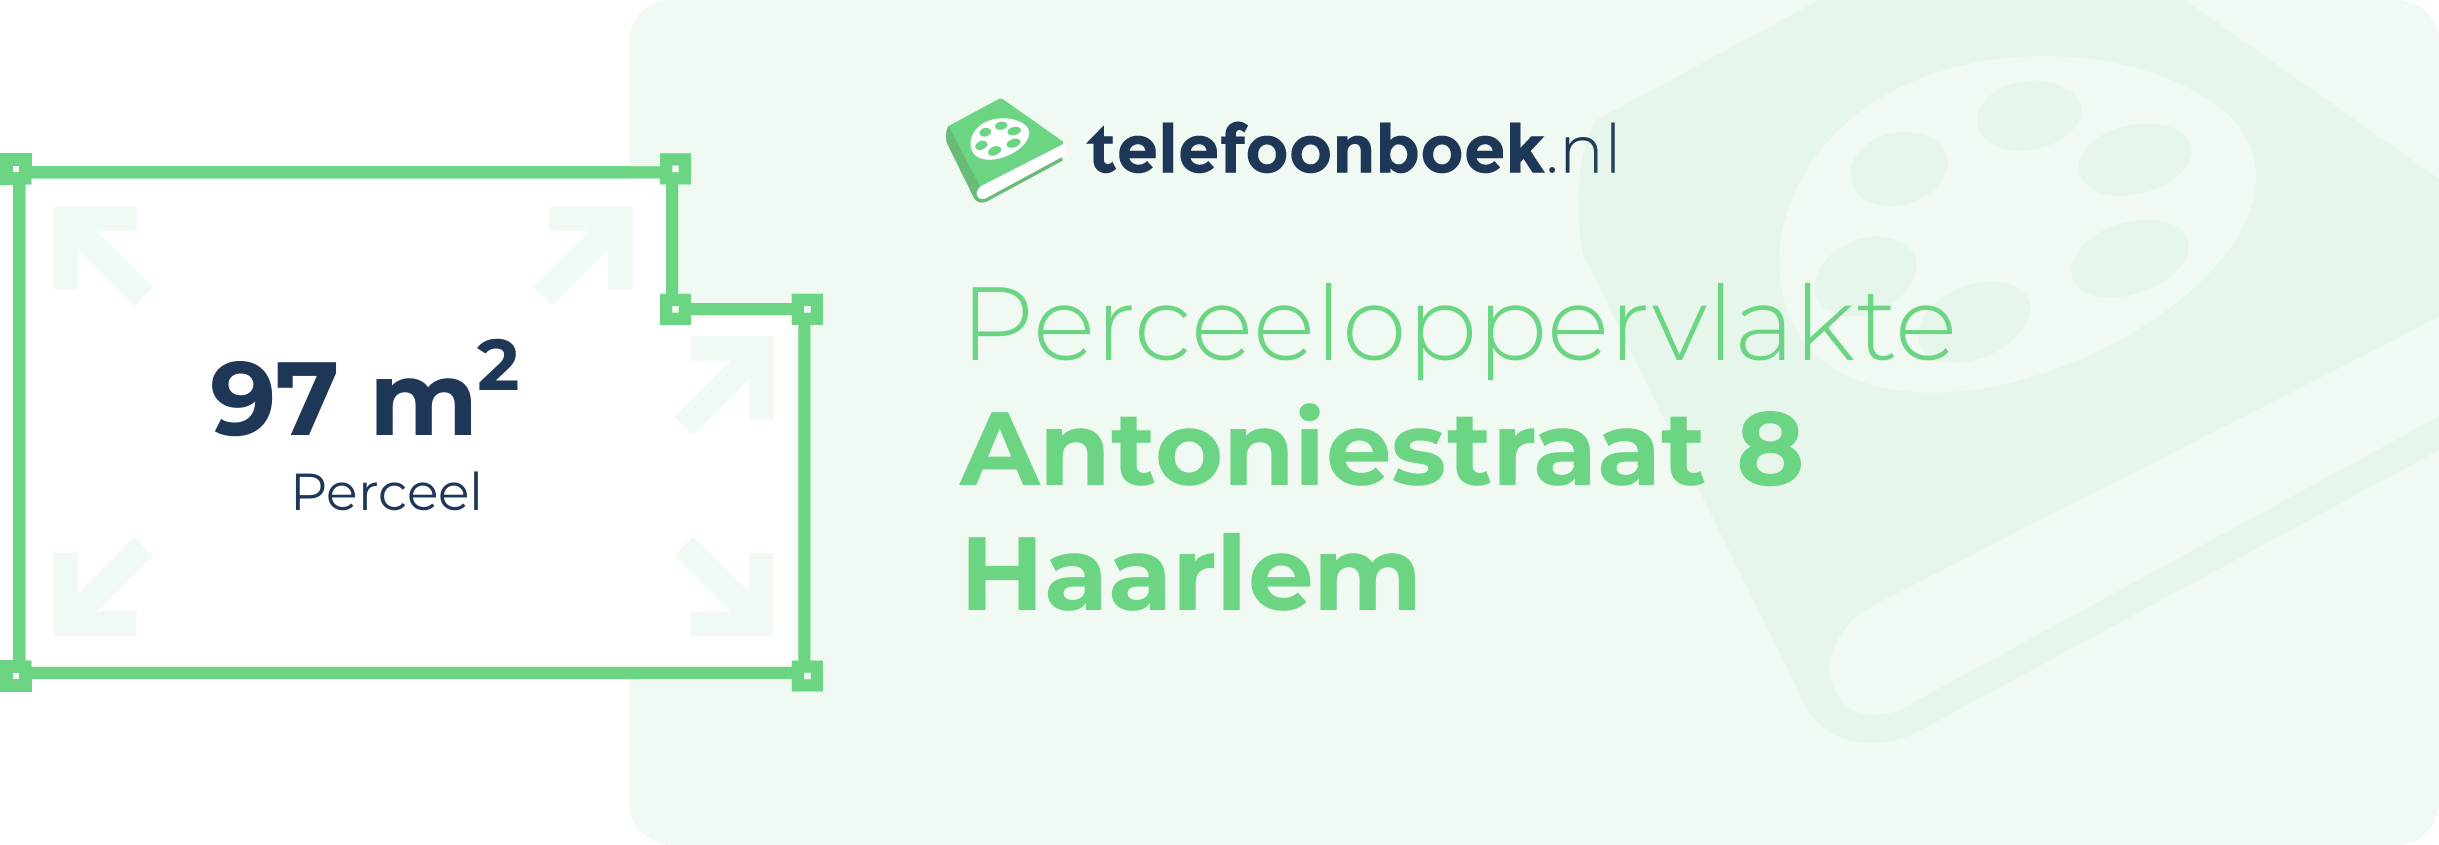 Perceeloppervlakte Antoniestraat 8 Haarlem